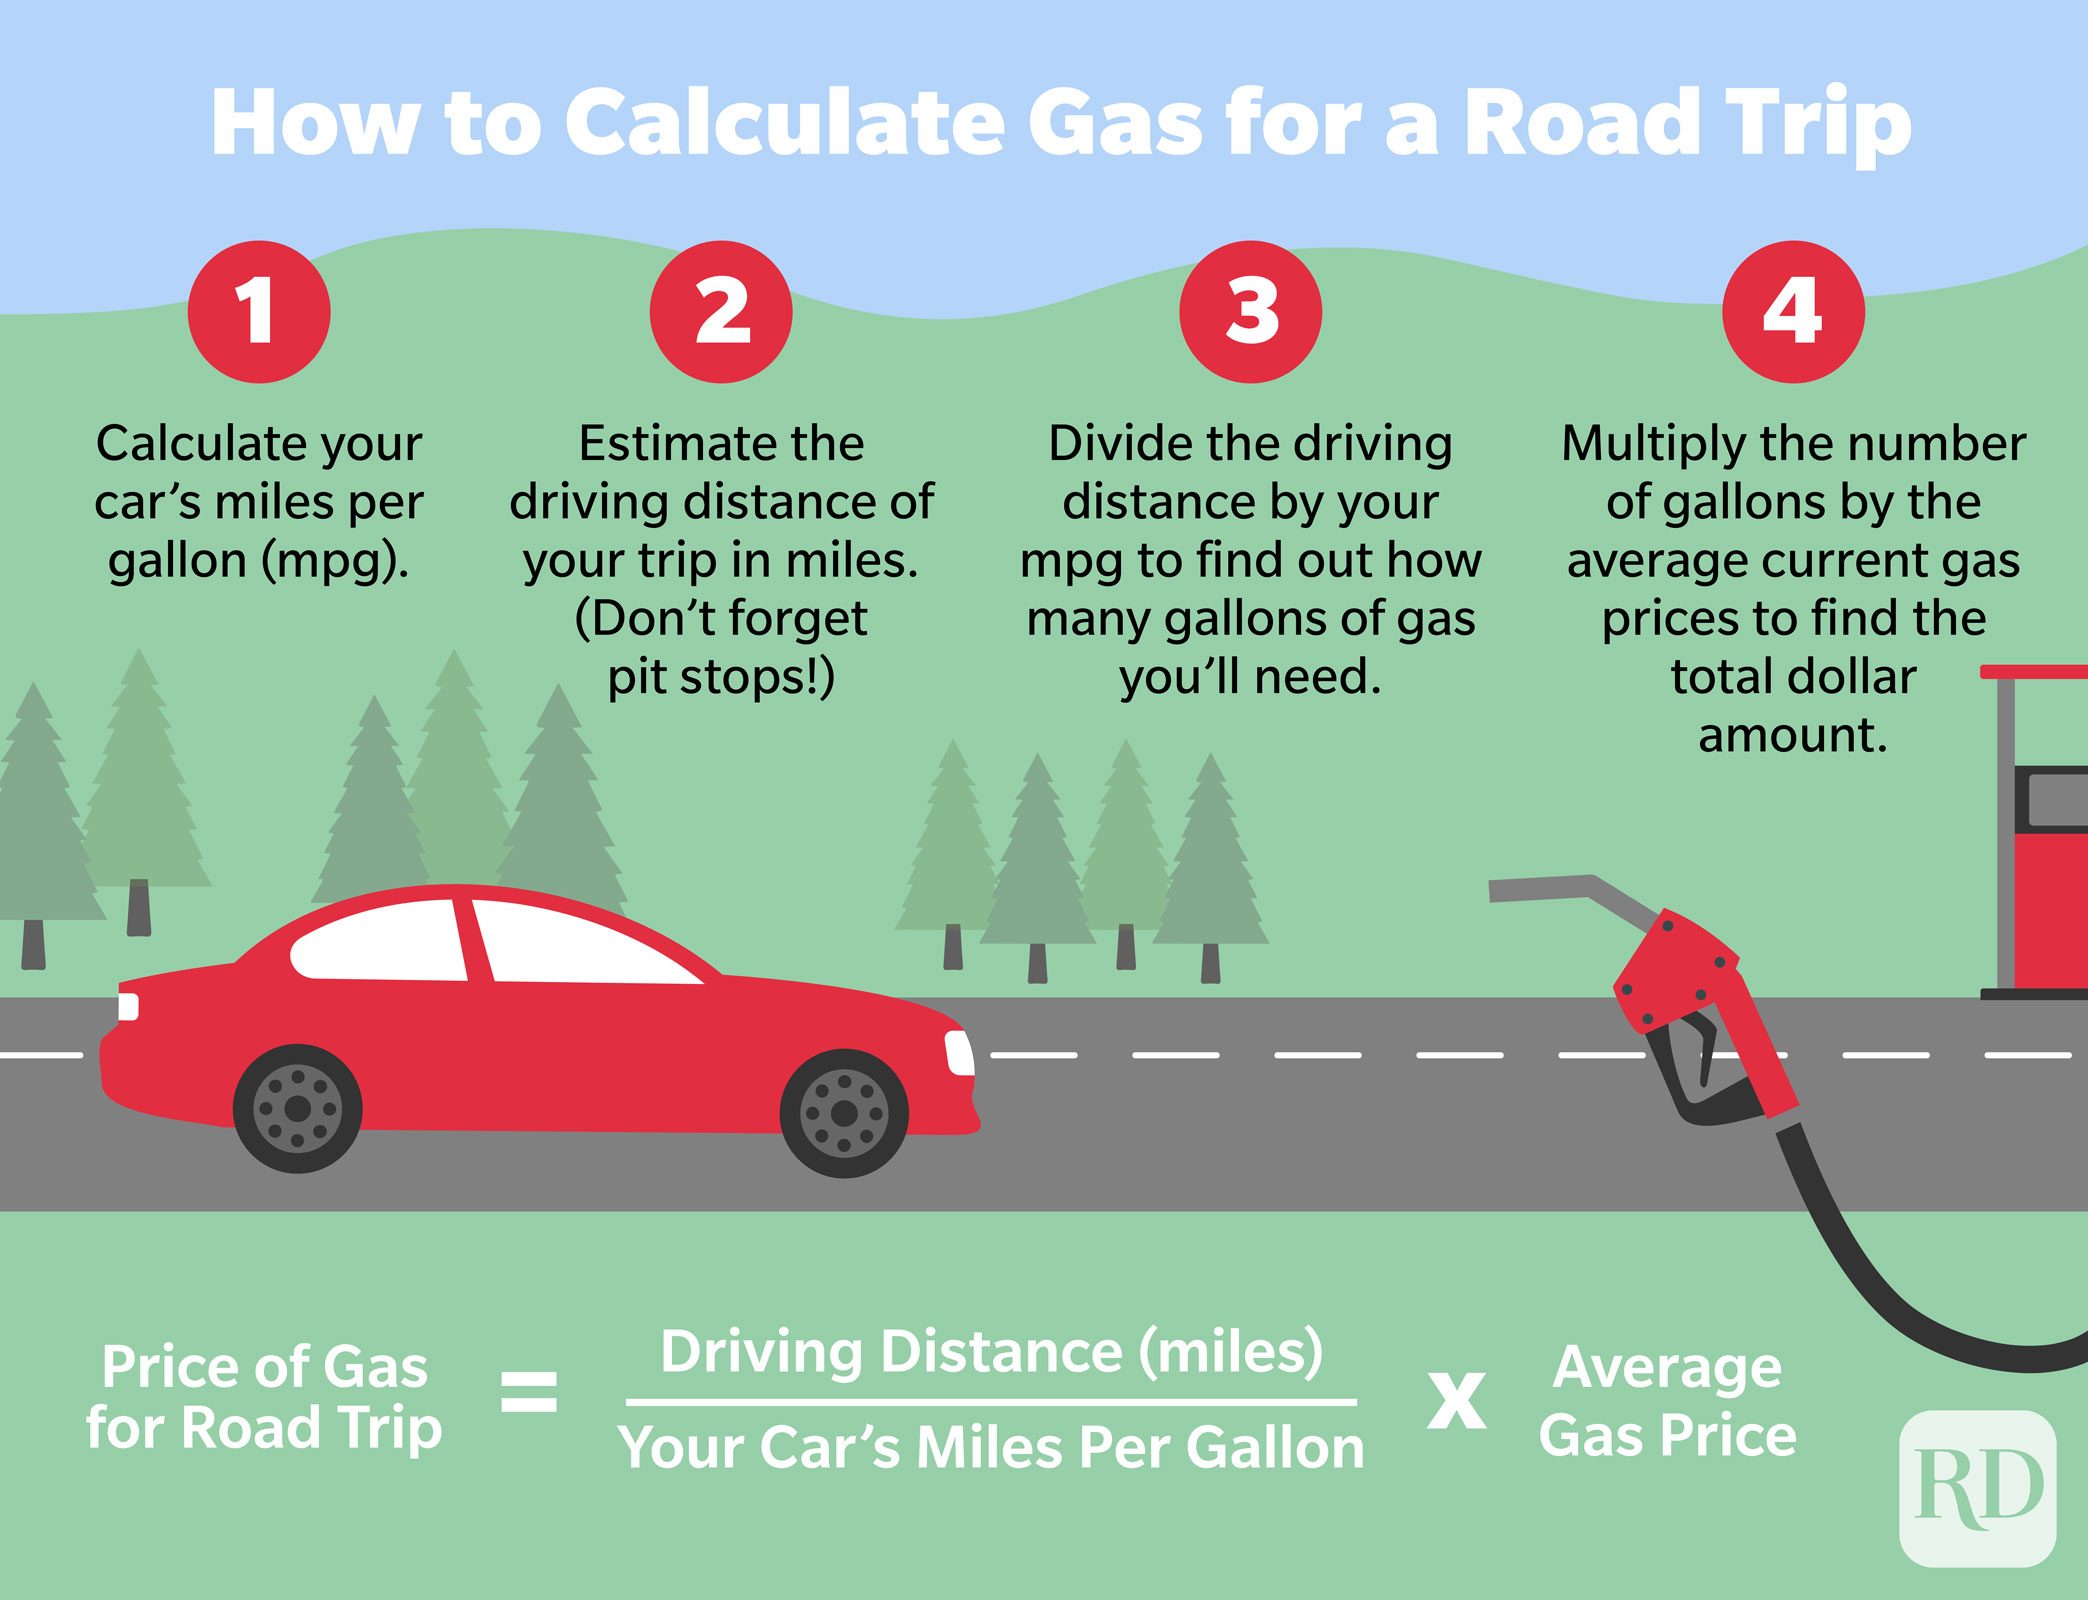 infografisk illustration outlinging trinene i hvordan man beregner det beløb, gas vil koste på en biltur